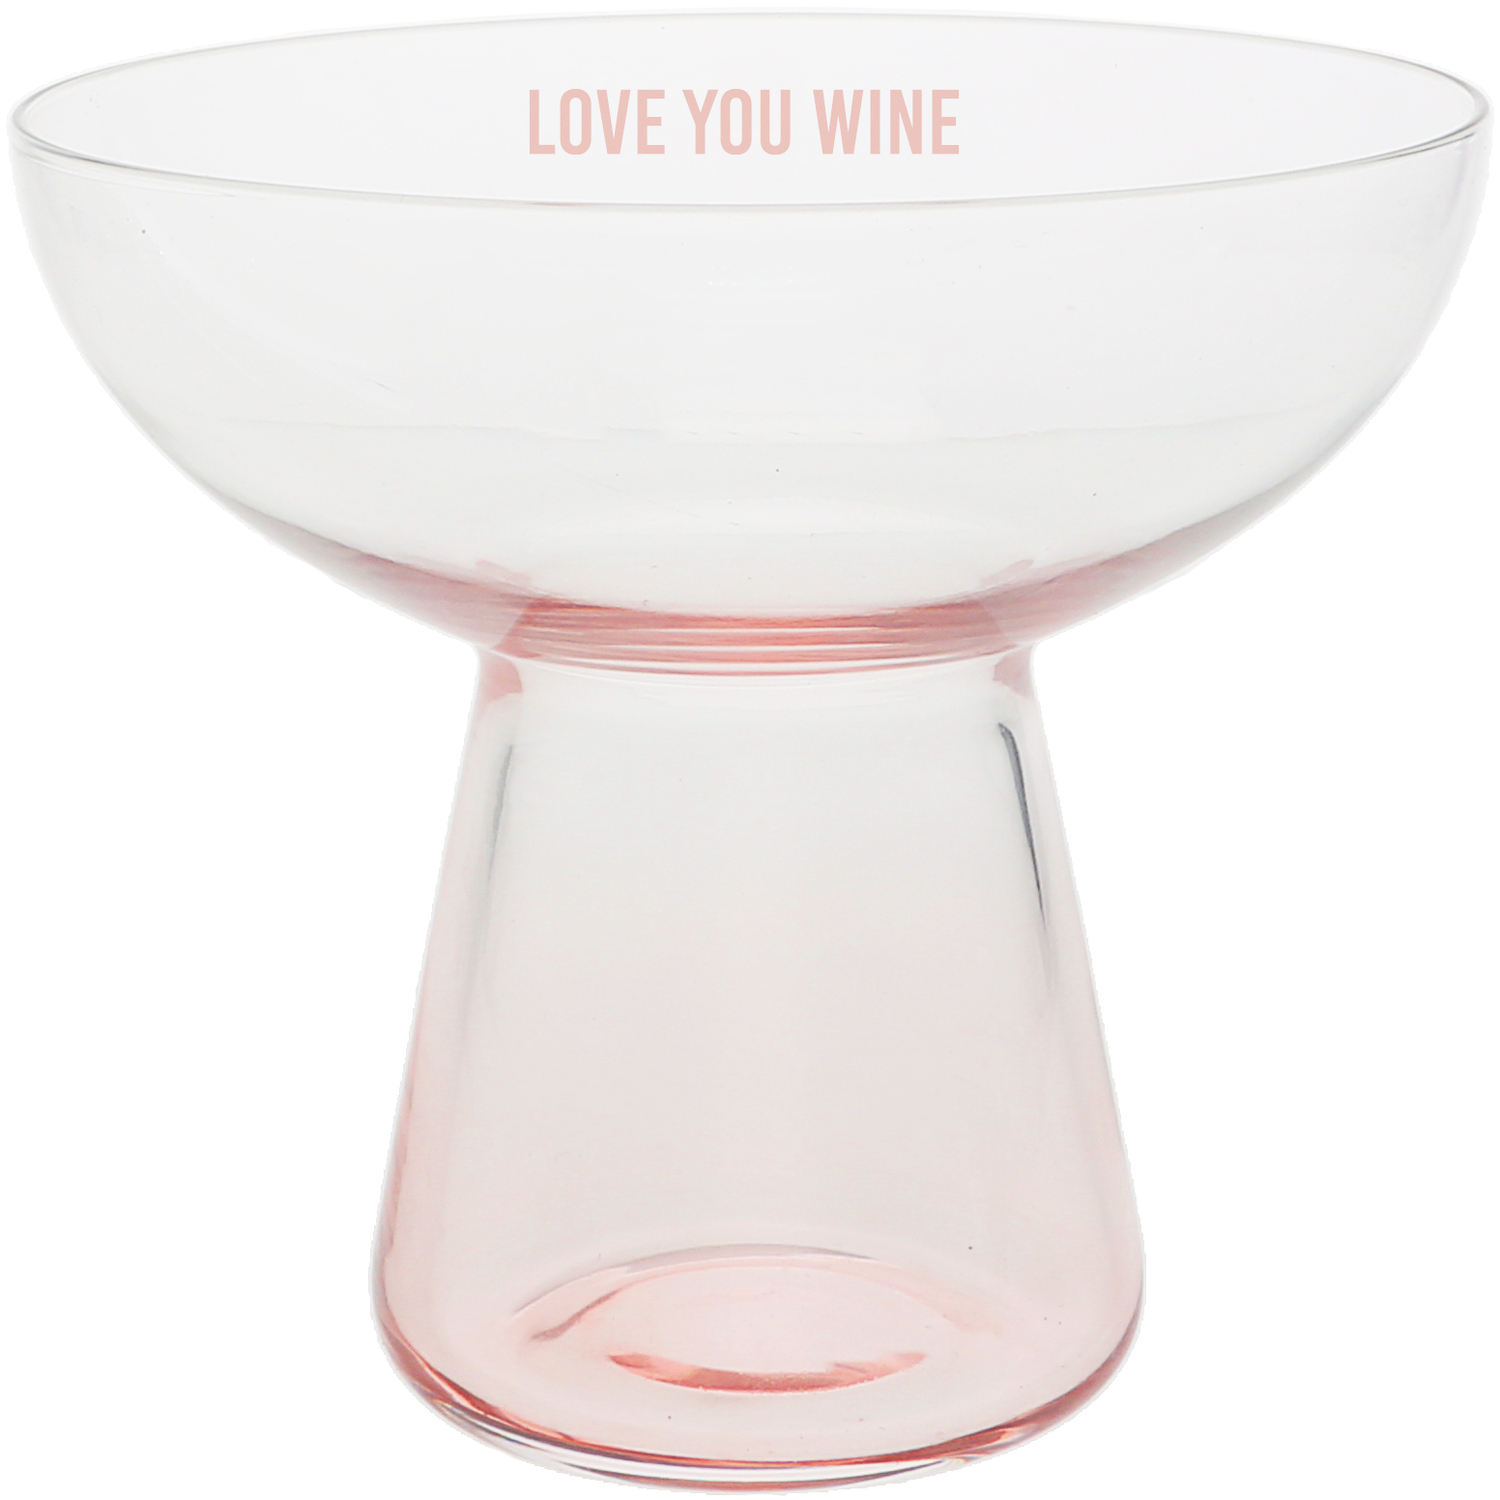 Love You Wine by Love You - Love You Wine - 15 oz Cocktail Glass